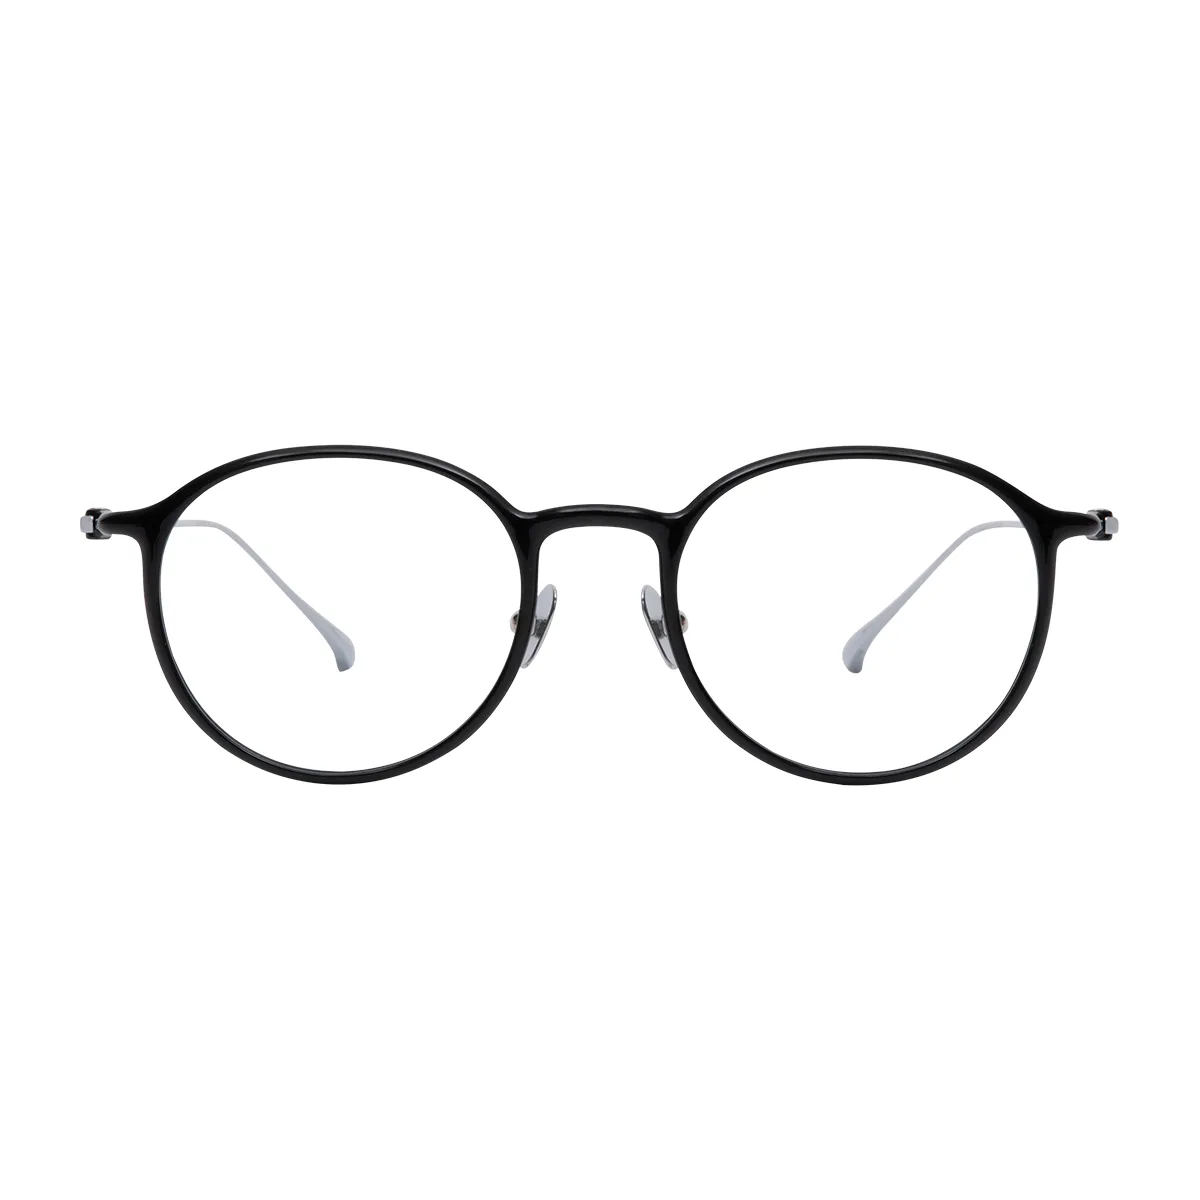 Micah - Round Black Glasses for Men & Women